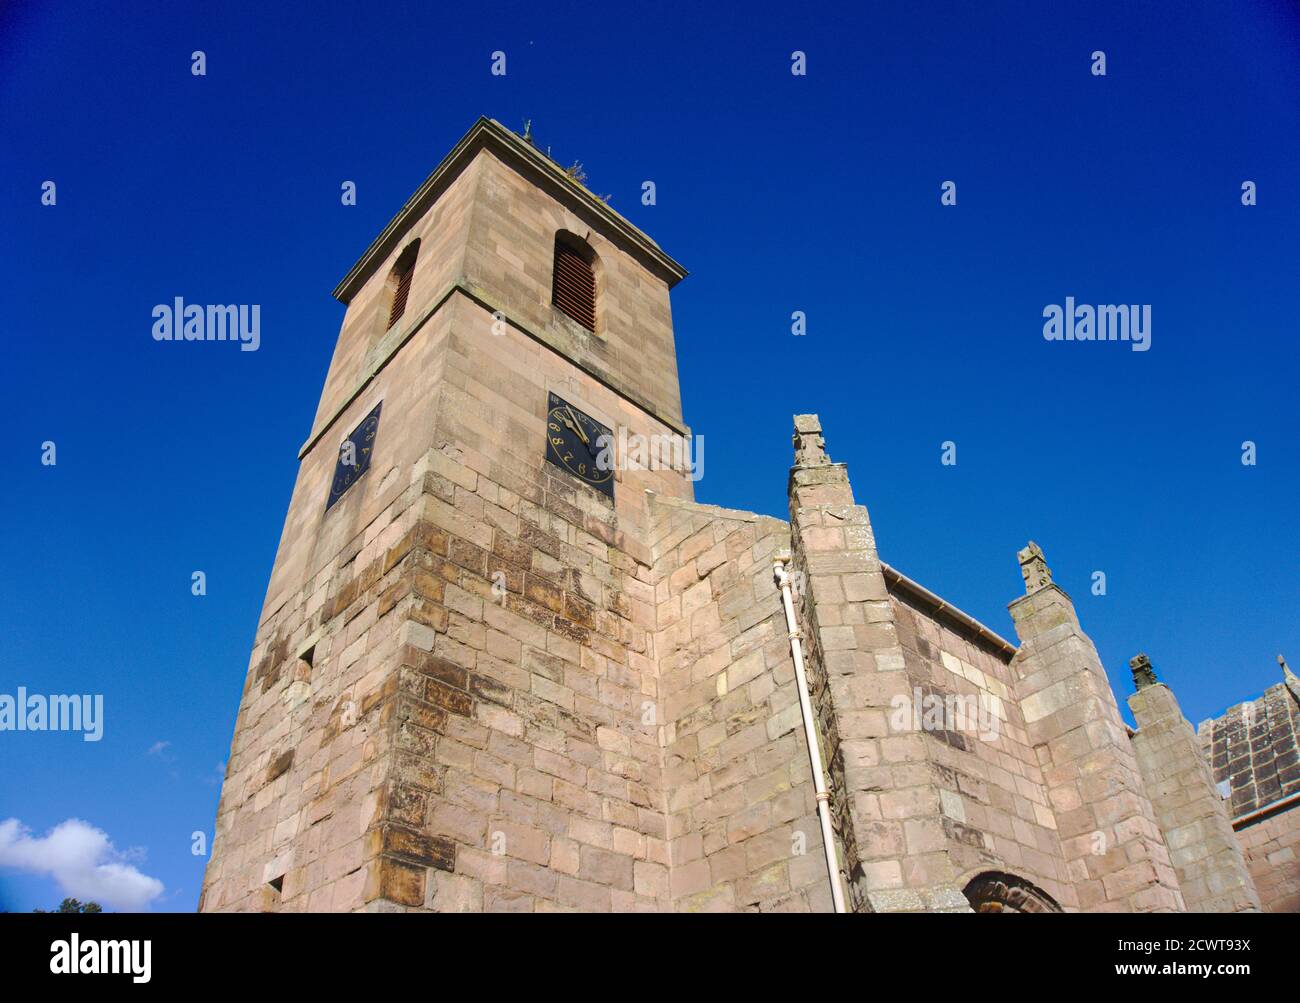 Tour ouest de l'église Ladykirk, construite sur ordre du roi James IV à Berwickshire, frontières écossaises, Royaume-Uni. Fait maintenant partie de l'Écomusée de Flodden 1513. Banque D'Images